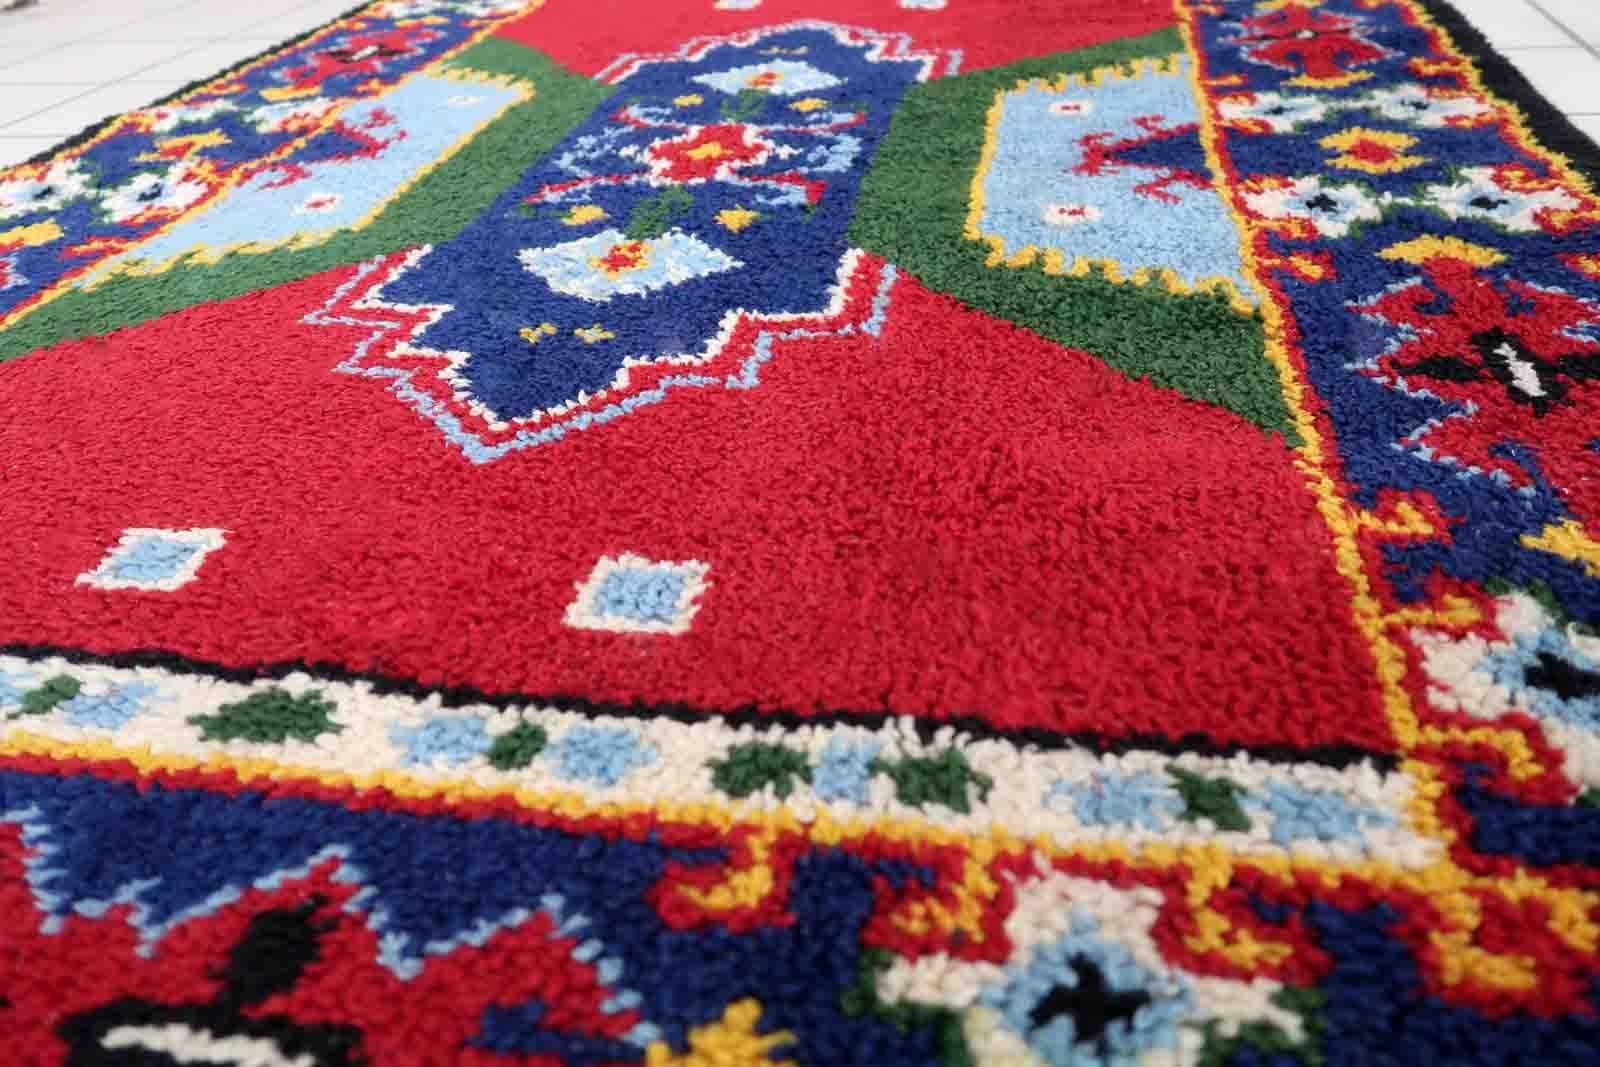 Französischer Savonnerie-Teppich in bunten Farbtönen. Der Teppich wurde in der Mitte des 20. Jahrhunderts aus Wolle hergestellt. Es befindet sich in einem guten Originalzustand.

-zustand: original gut,

-etwa: 1950er Jahre,

-größe: 3,8' x 5,7'